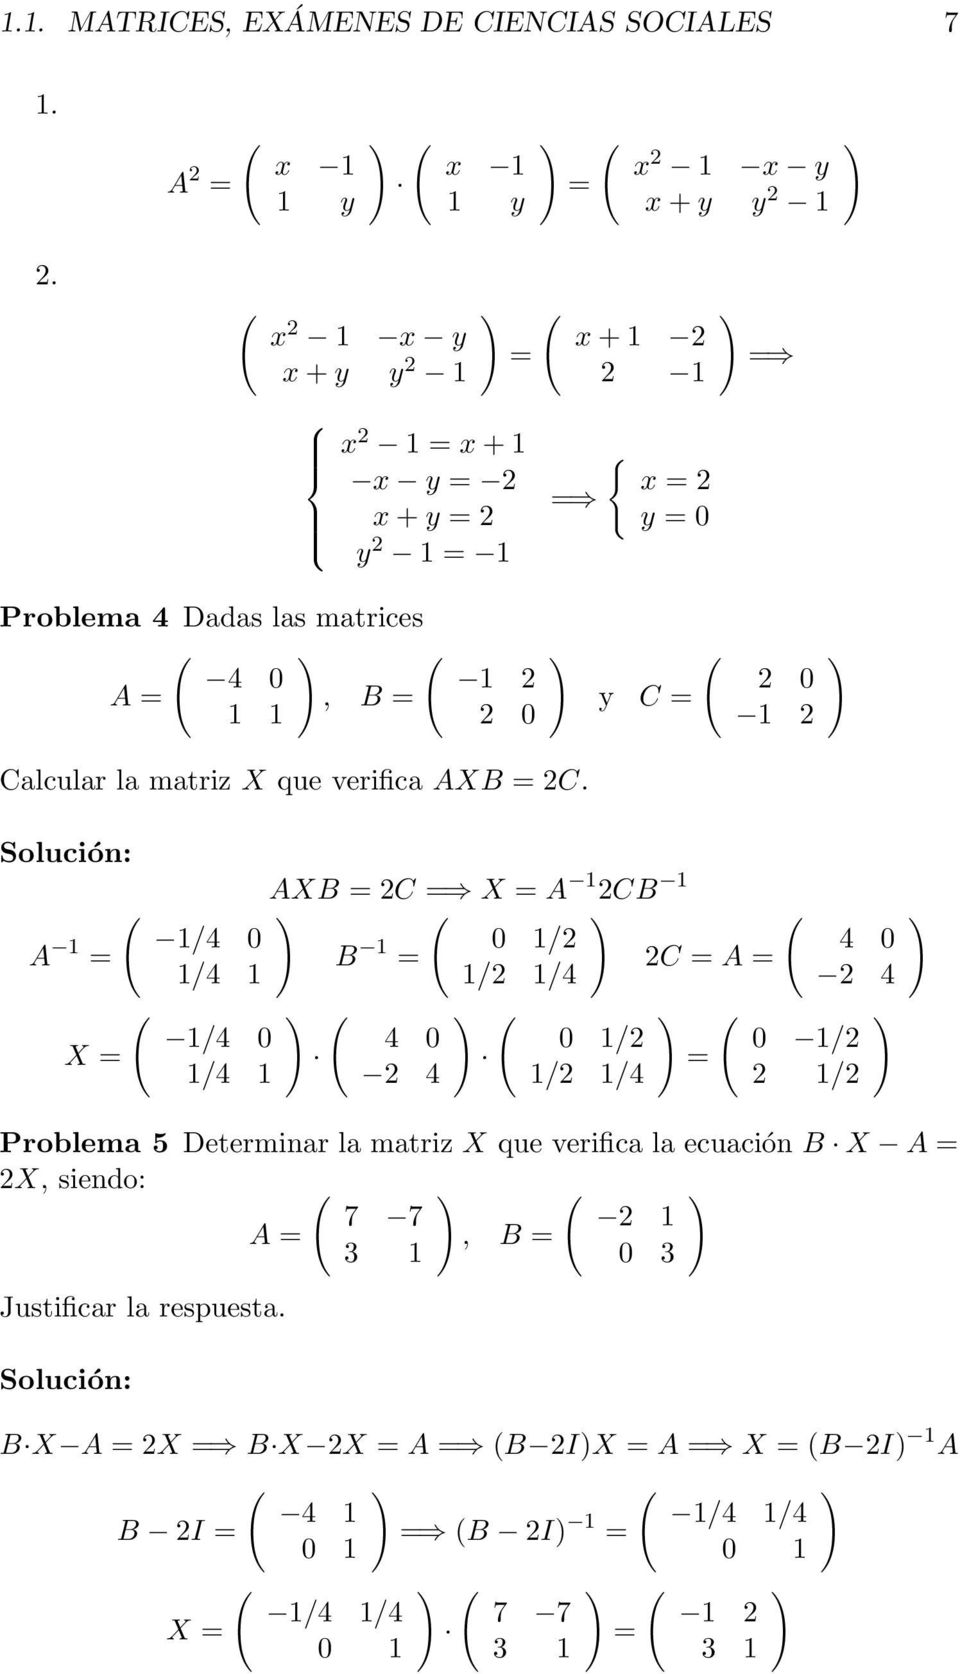 4 0 1 2 A =, B = 1 1 2 0 ) y C = 2 0 1 2 ) Calcular la matriz X que verifica AXB = 2C.